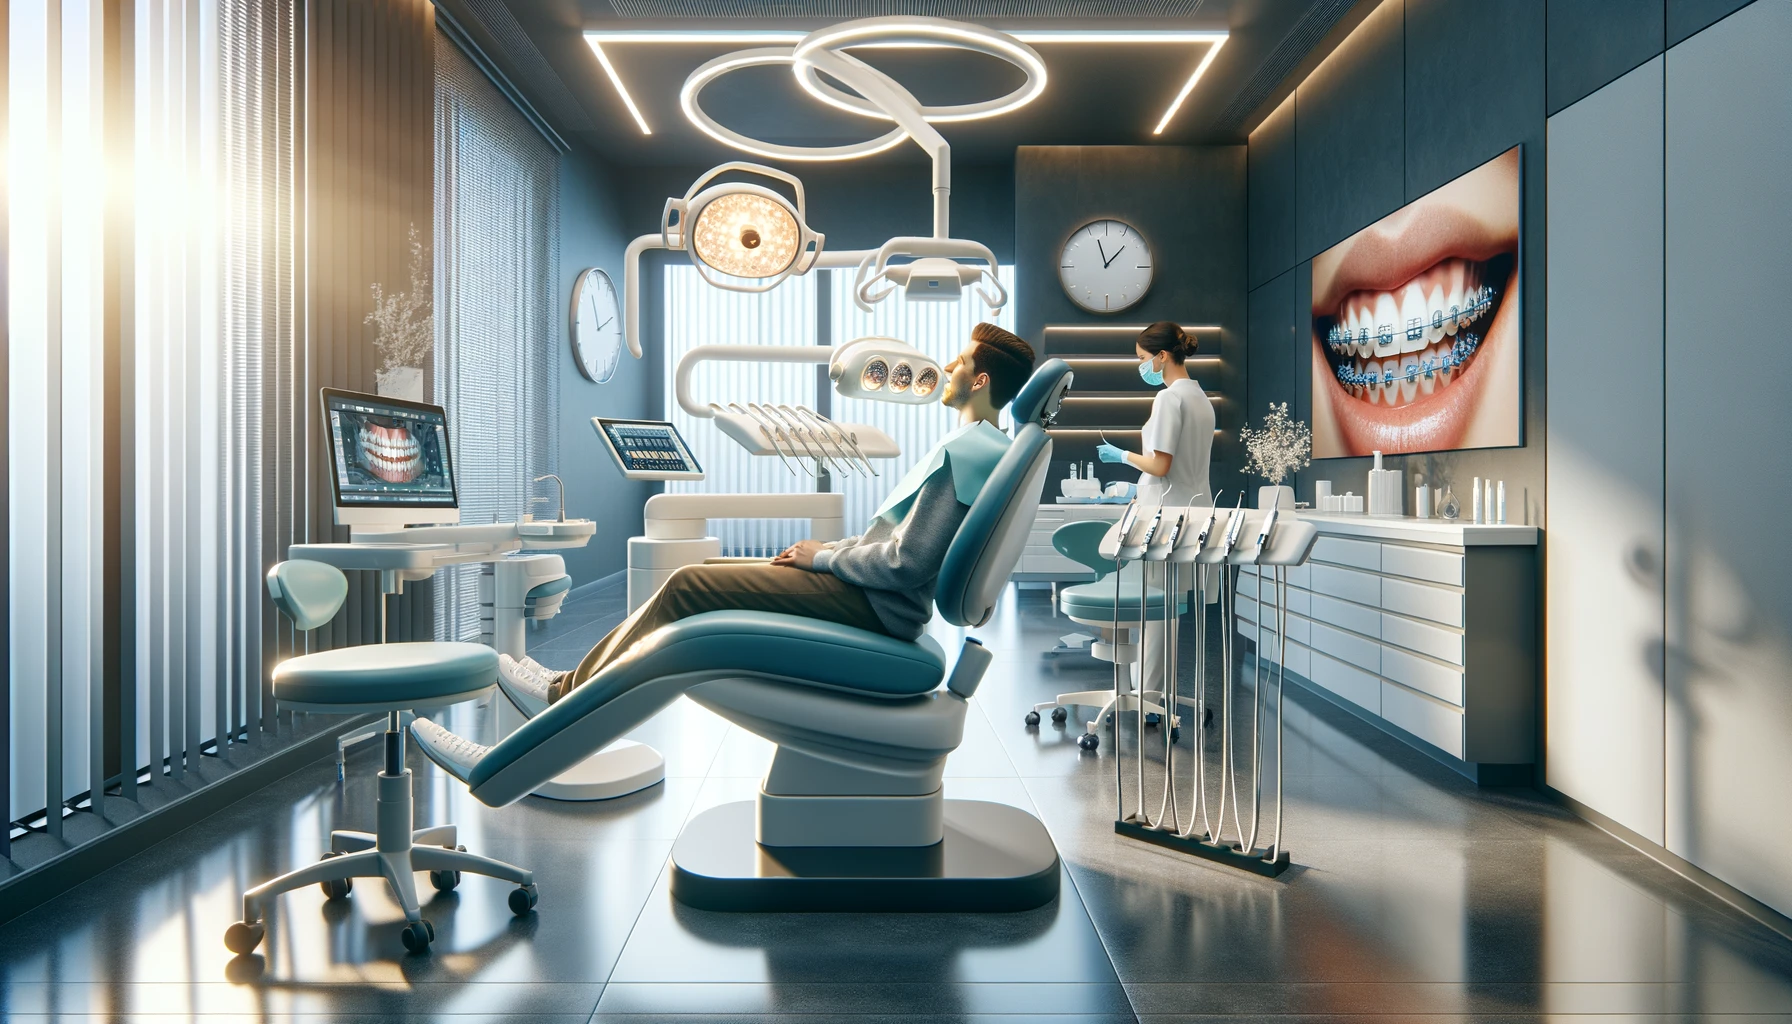 Moderne tannreguleringsklinikk for voksne med stilfullt interiÃ¸r og avansert utstyr, som viser behandling av voksen pasient